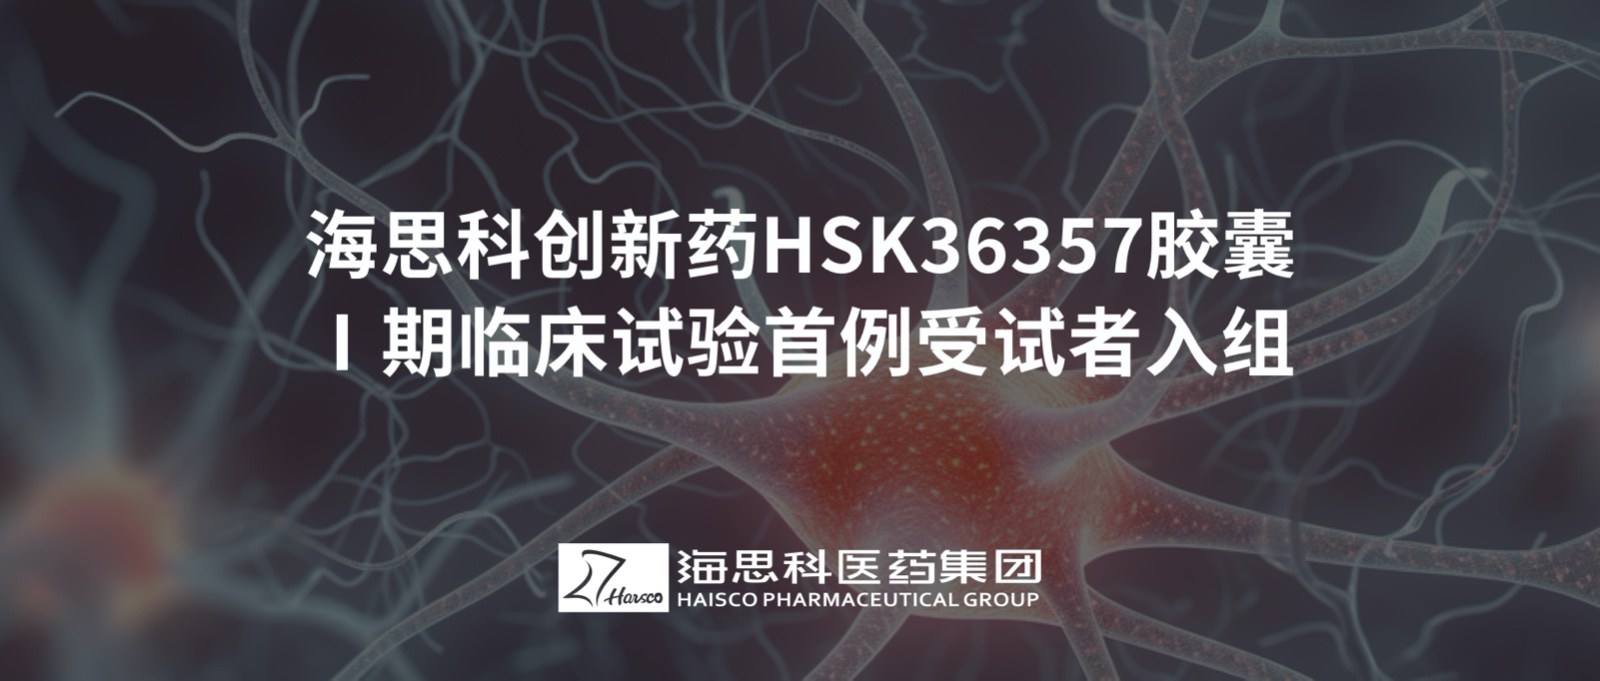 8455新葡萄娱乐官网版下载创新药HSK36357胶囊Ⅰ期临床试验首例受试者入组